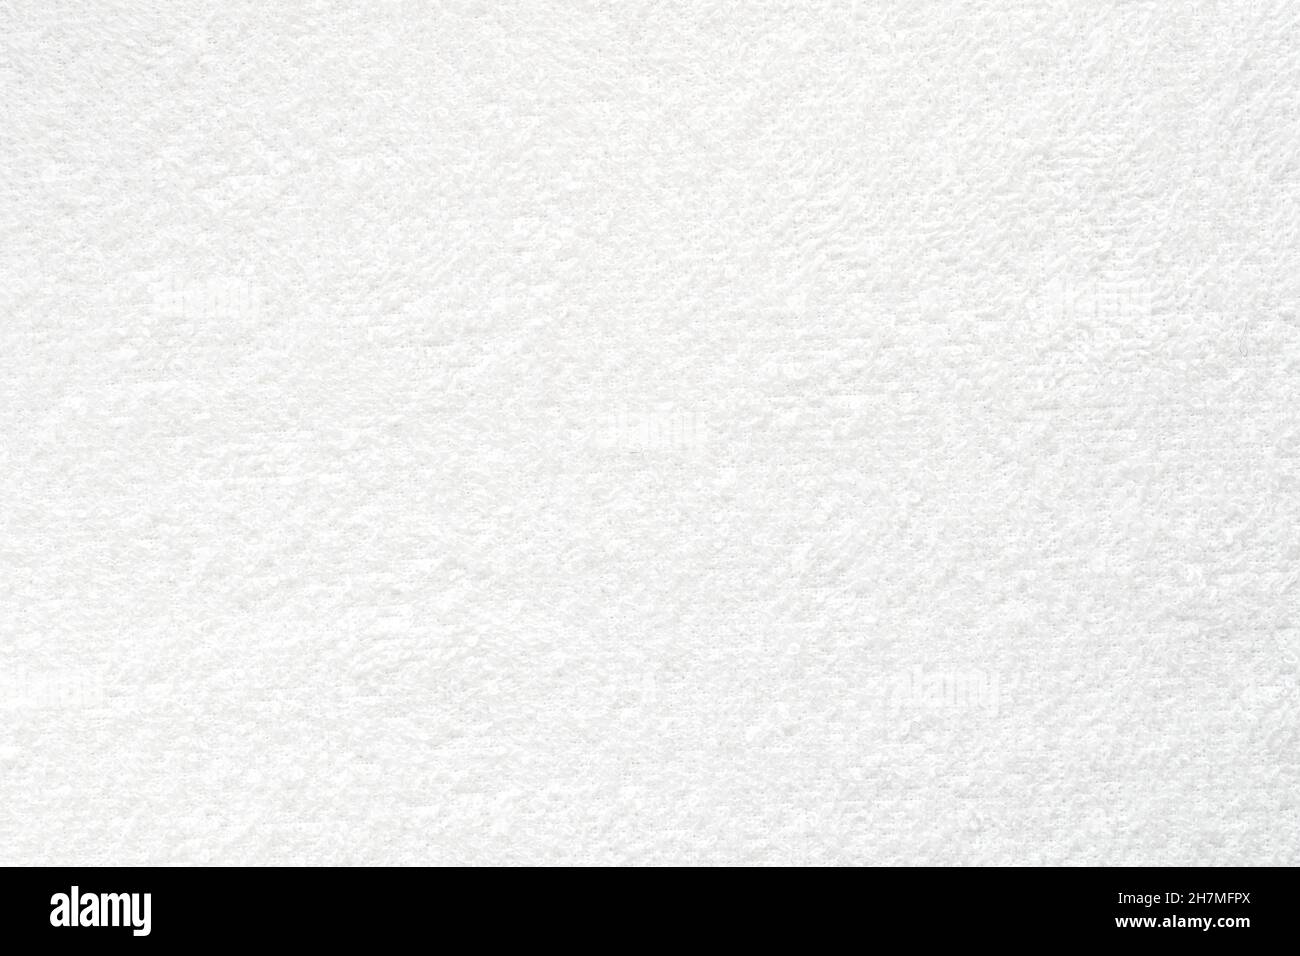 Weiches weißes Handtuch, Nahaufnahme eines weichen Handtuchs als Textur oder Hintergrund, Draufsicht Stockfoto